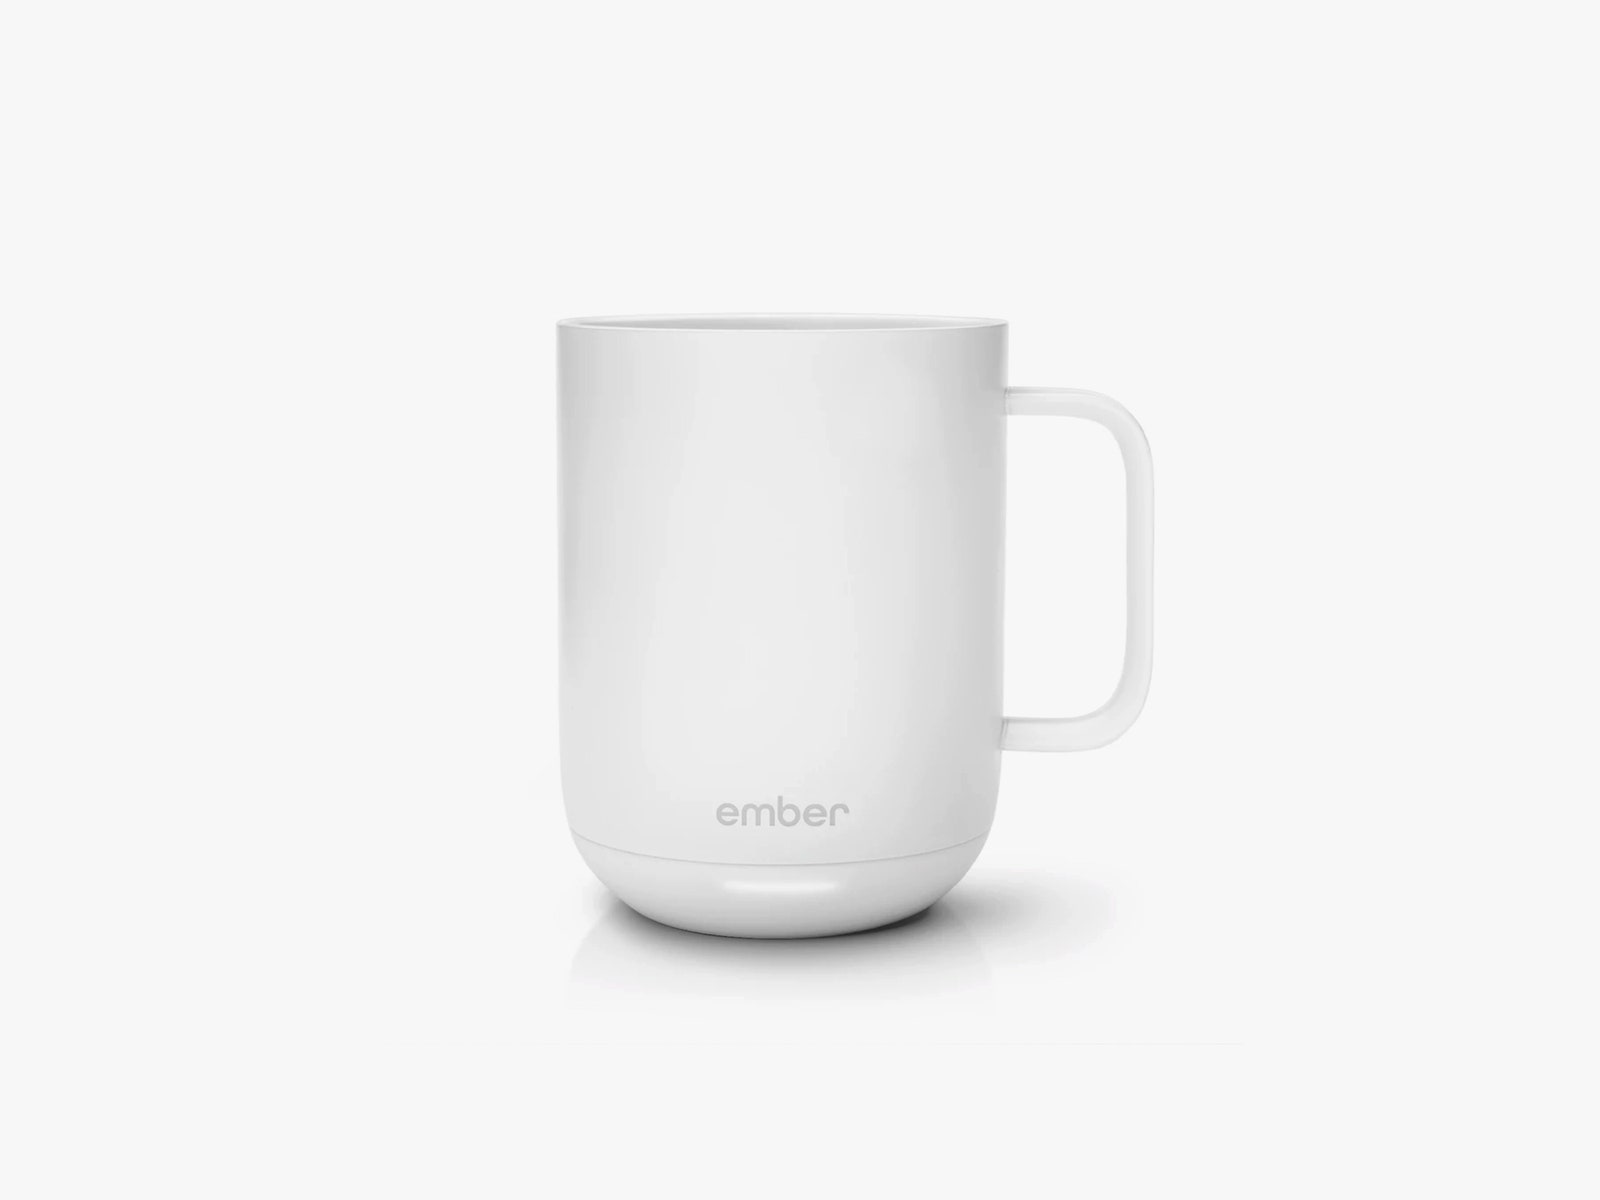 ember mug in white